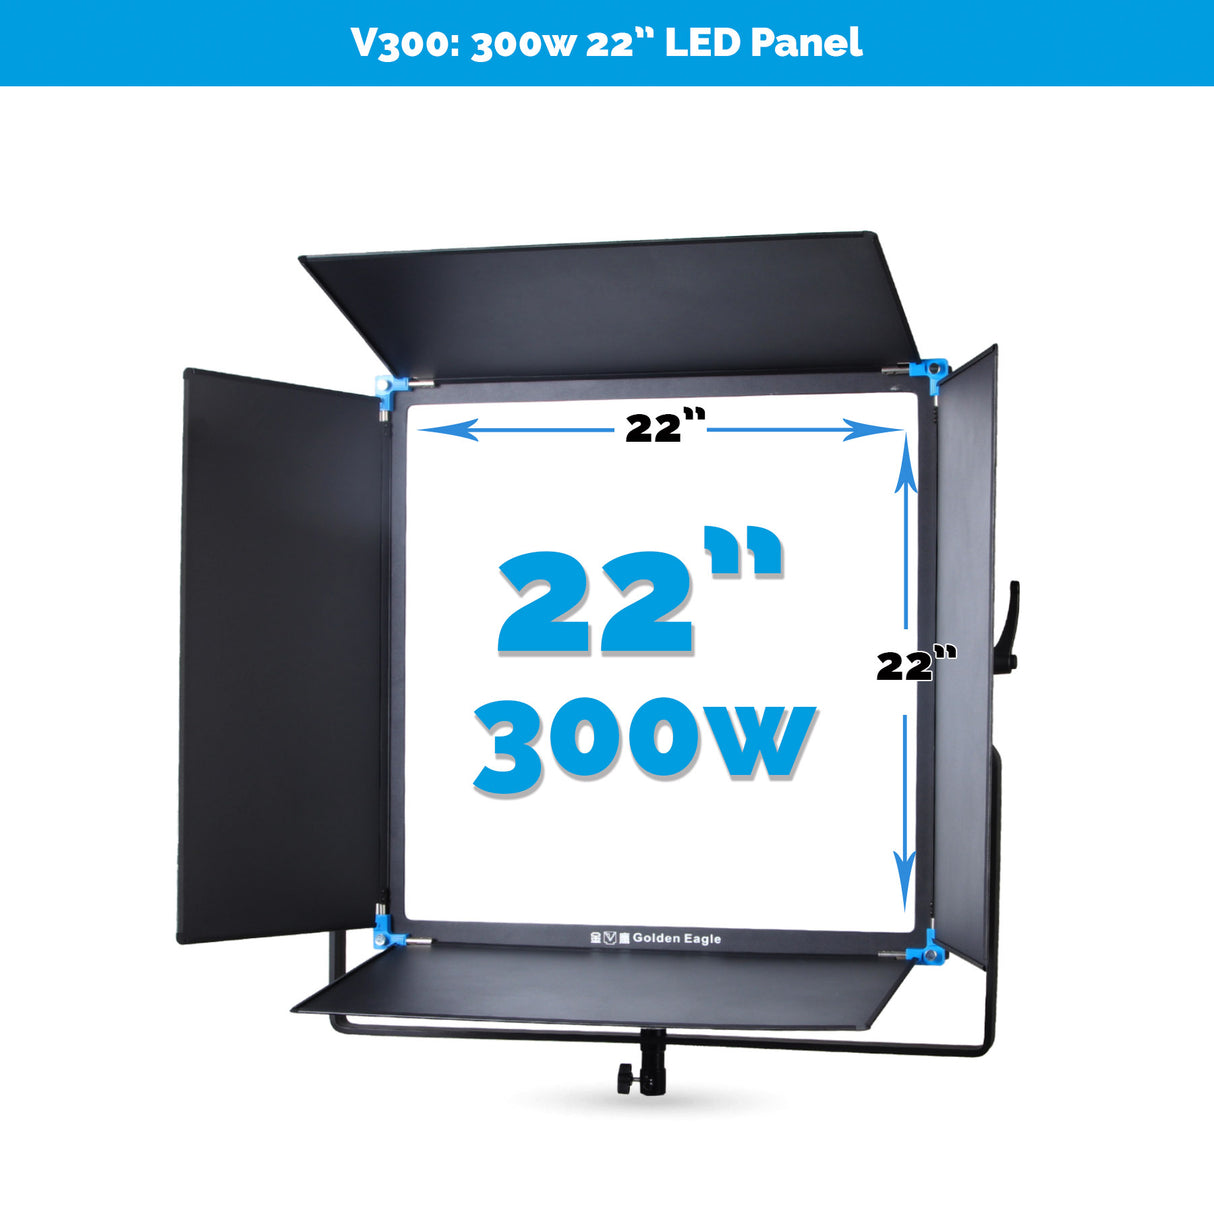 Golden Eagle V300 300w 22" Square BiColor LED Panel